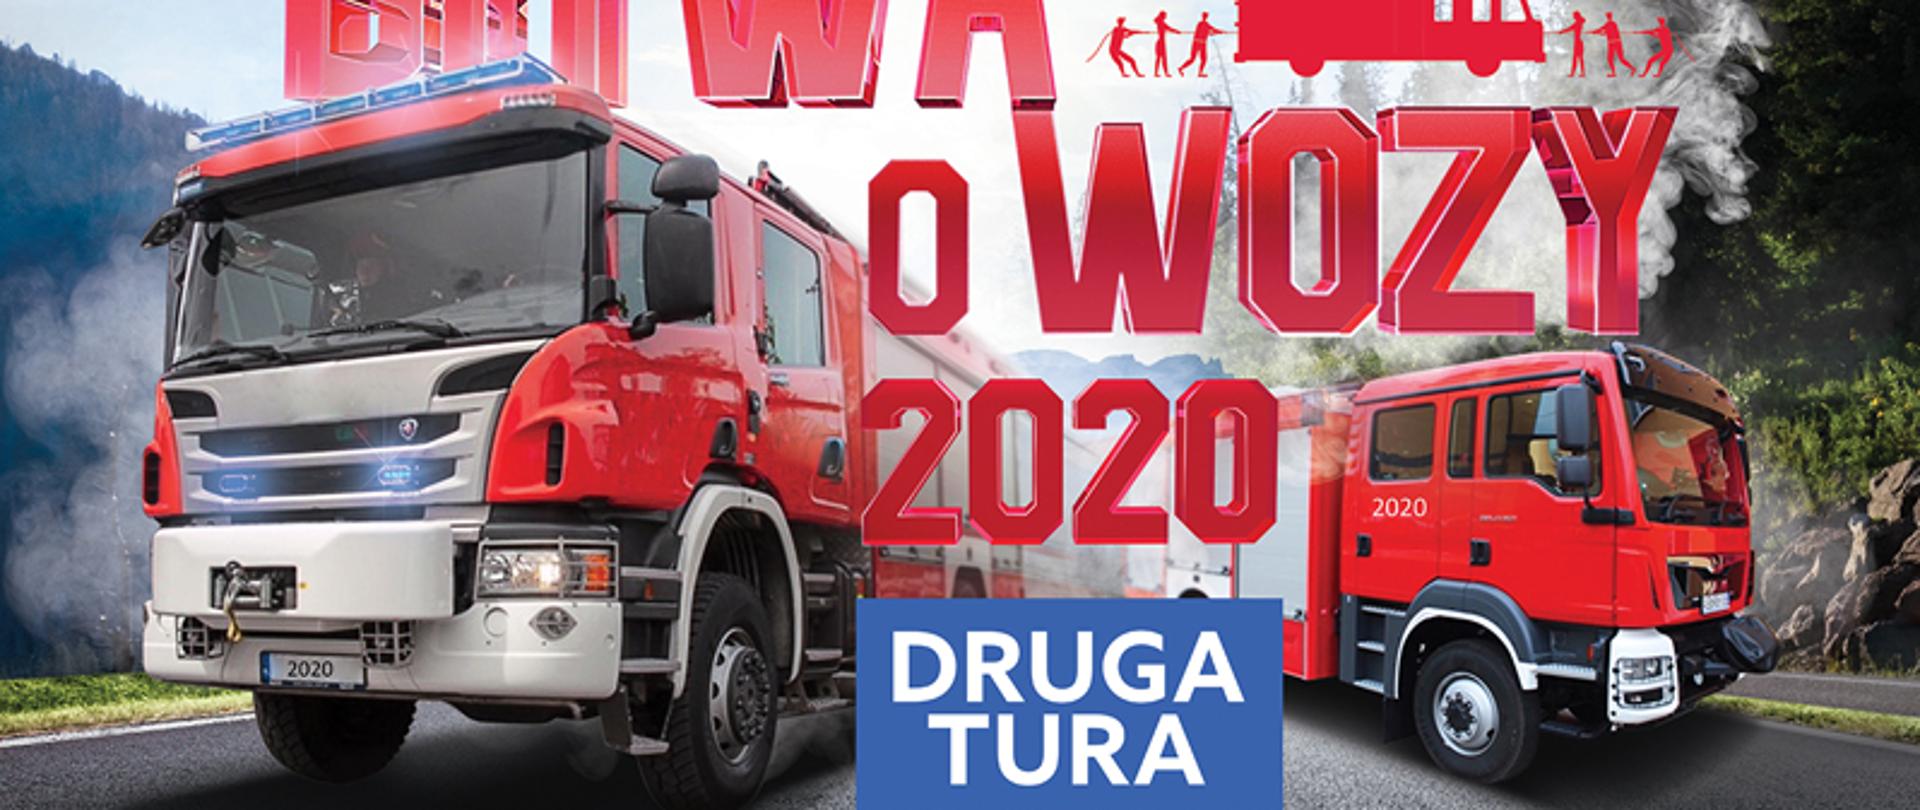 Obraz przedstawia dwa samochody gaśnicze koloru czerwonego na tle błękitnego nieba z napisem BITWA O WOZY 2020 DRUGA TURA